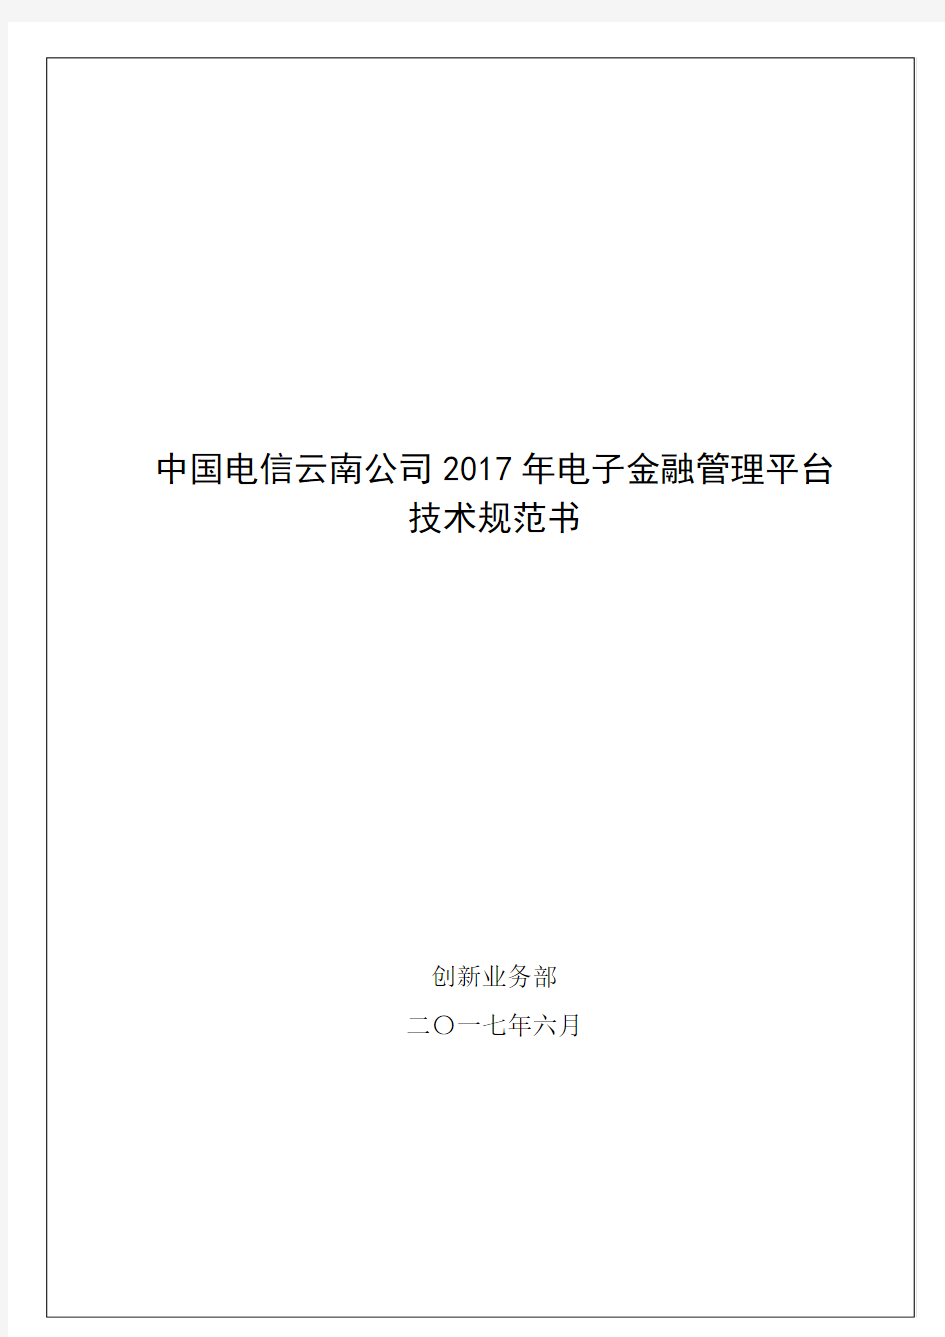 中国电信云南公司2017年电子金融管理平台技术规范书